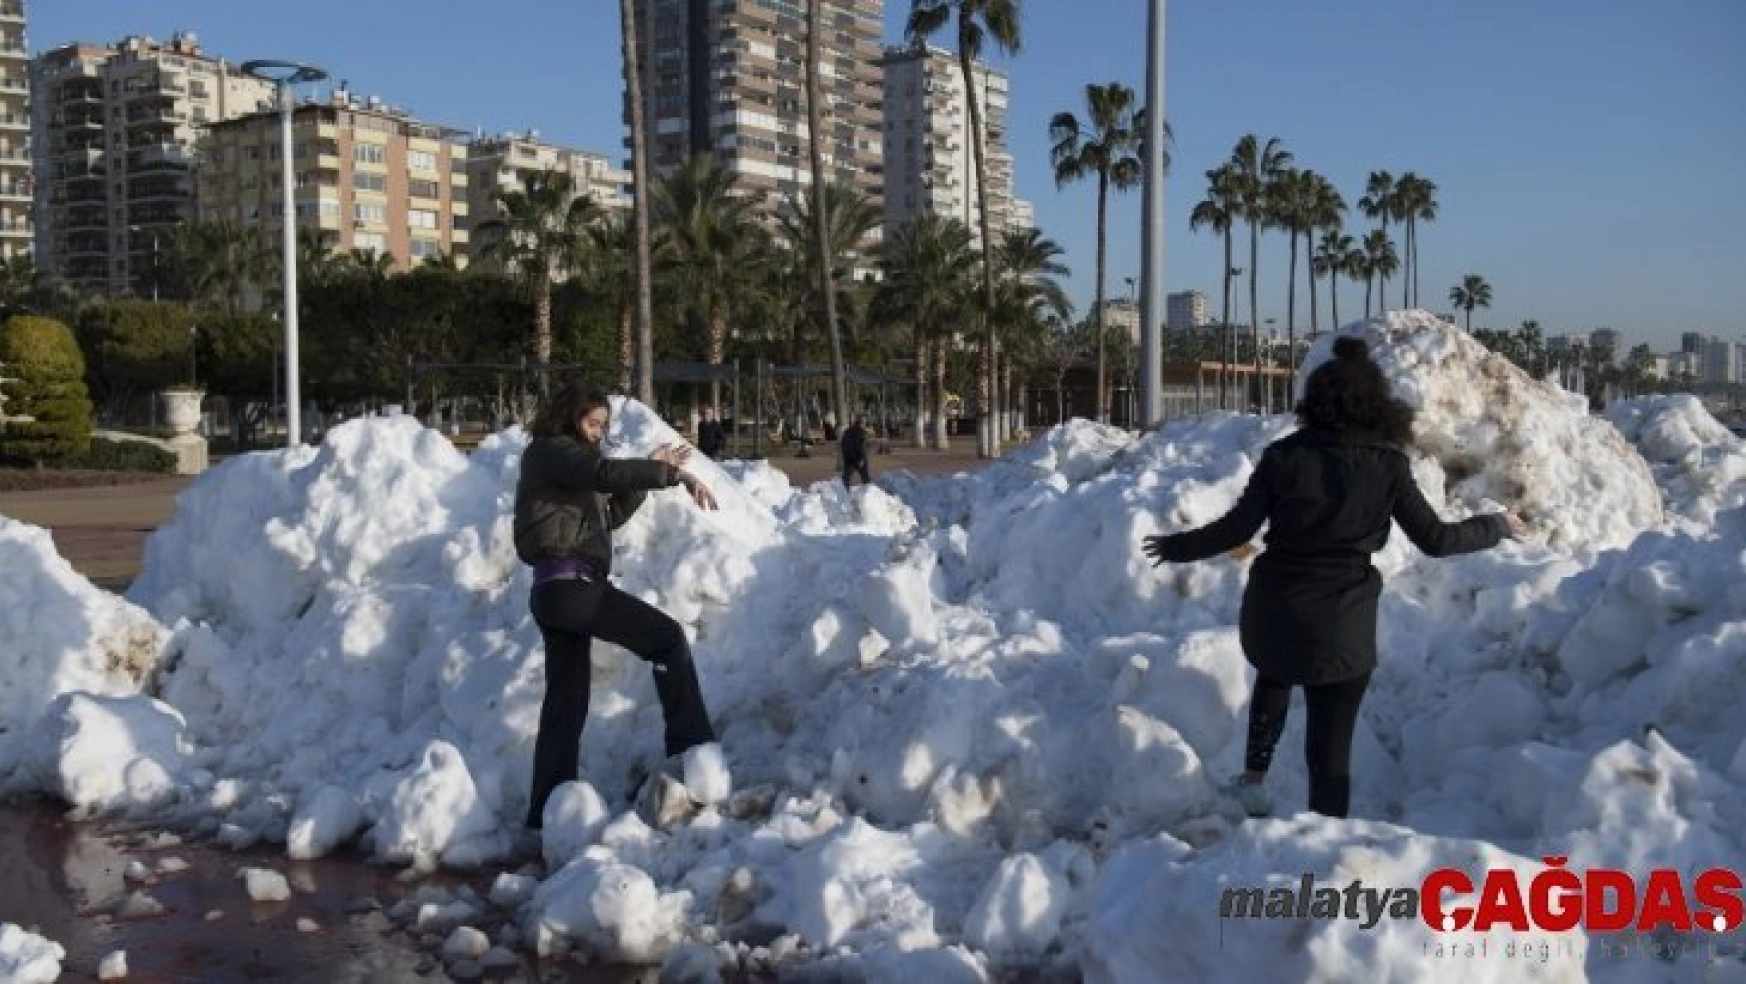 Büyükşehir Belediyesinden Mersinlilere kar sürprizi